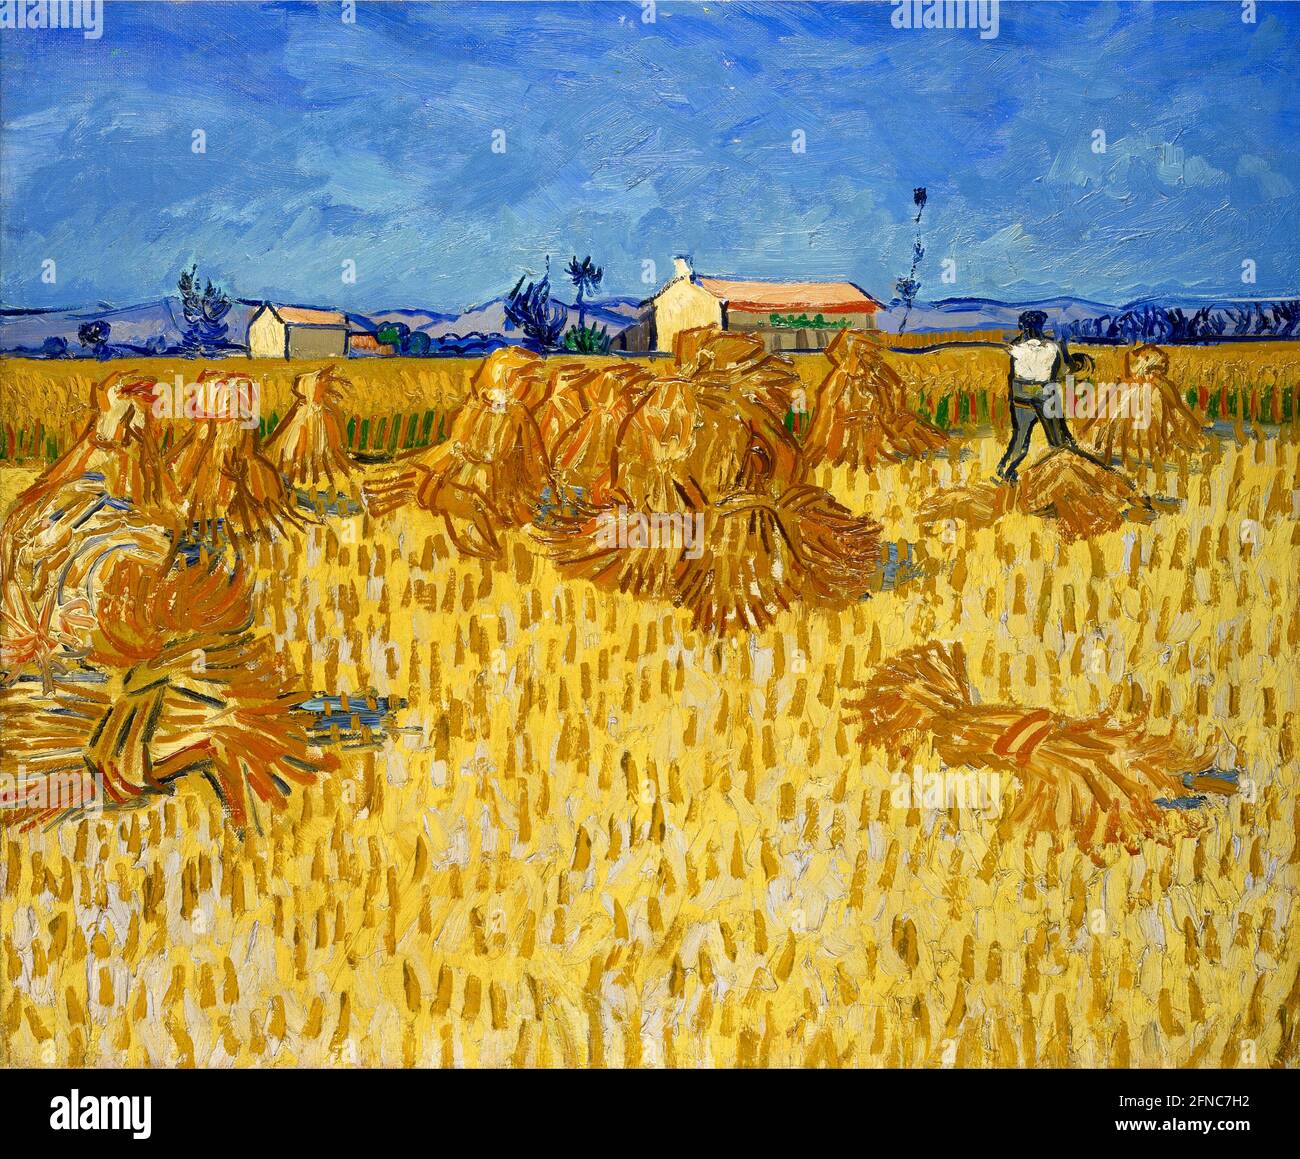 Vincent van Gogh Kunstwerk mit dem Titel Harvest in Provence. Ländliche Szene aus Südfrankreich mit einer lebendigen goldenen Maisernte vor einem reichen blauen Himmel. Stockfoto